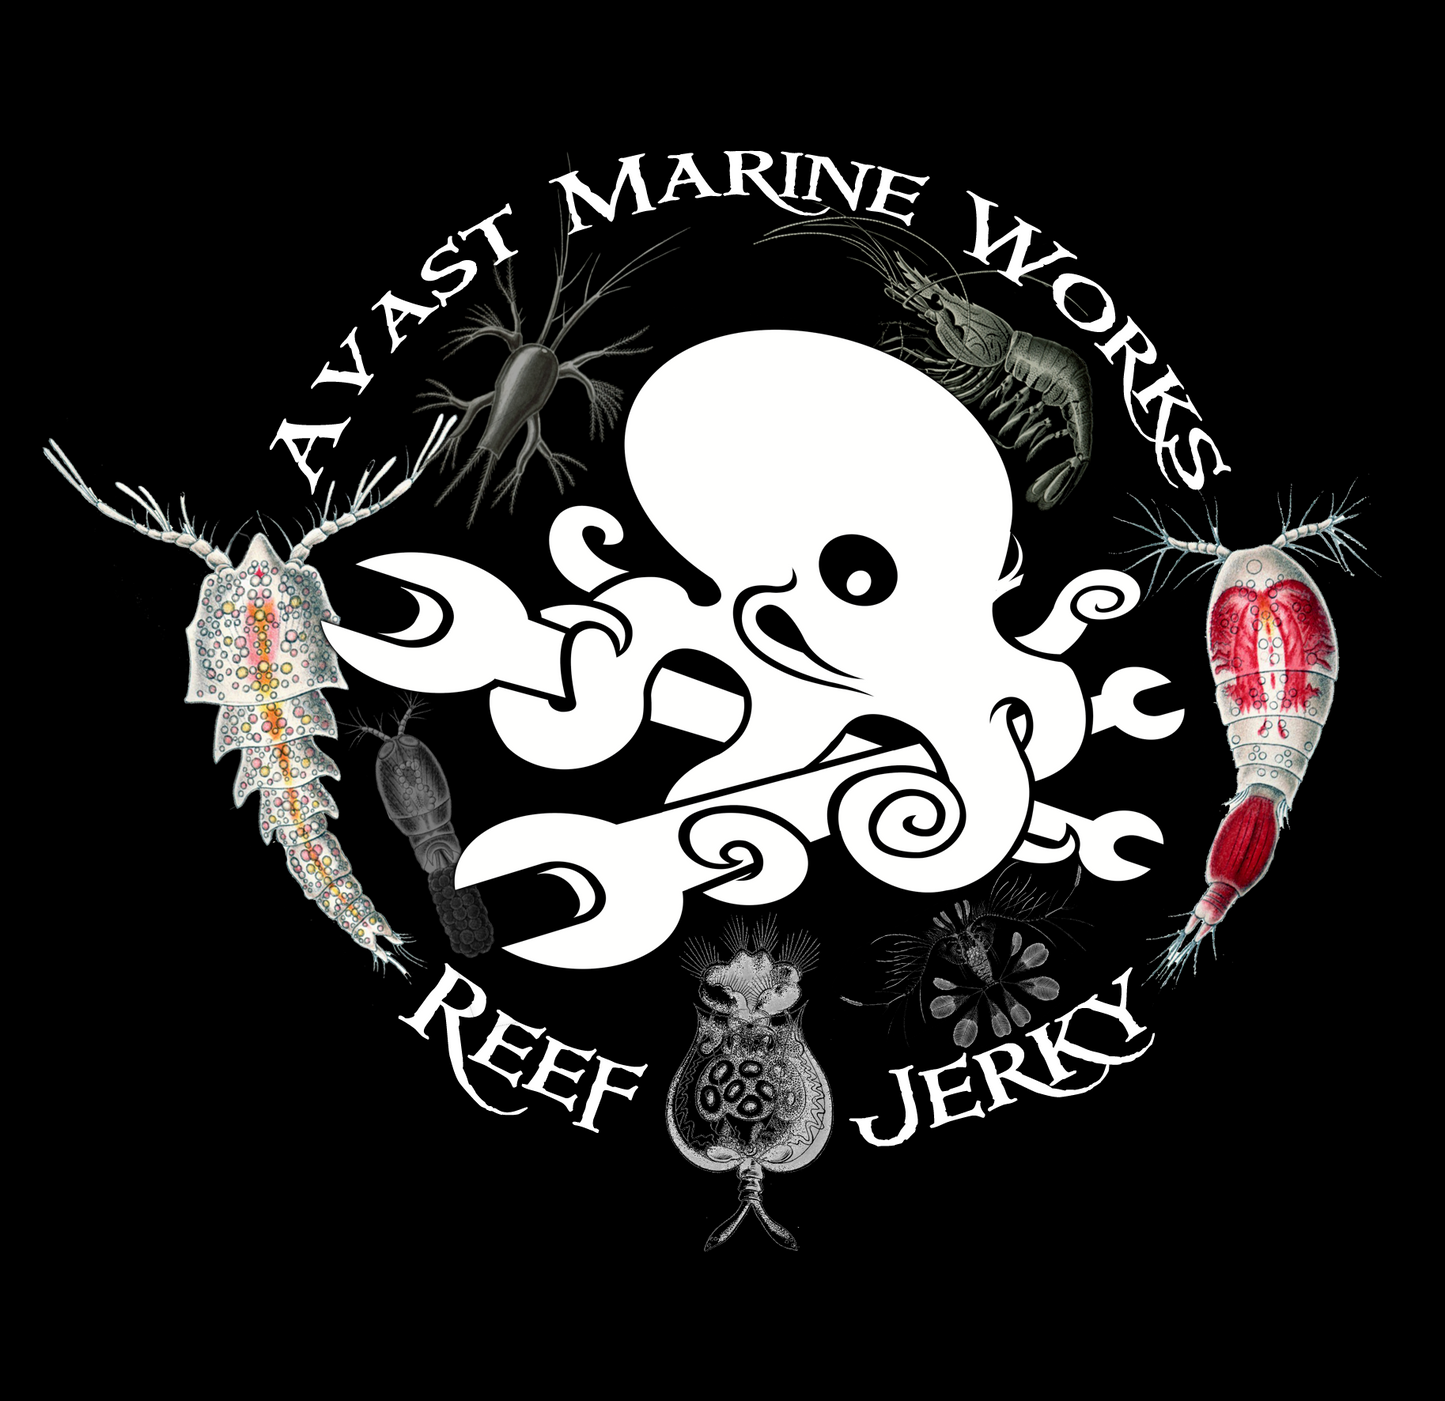 Reef Jerky